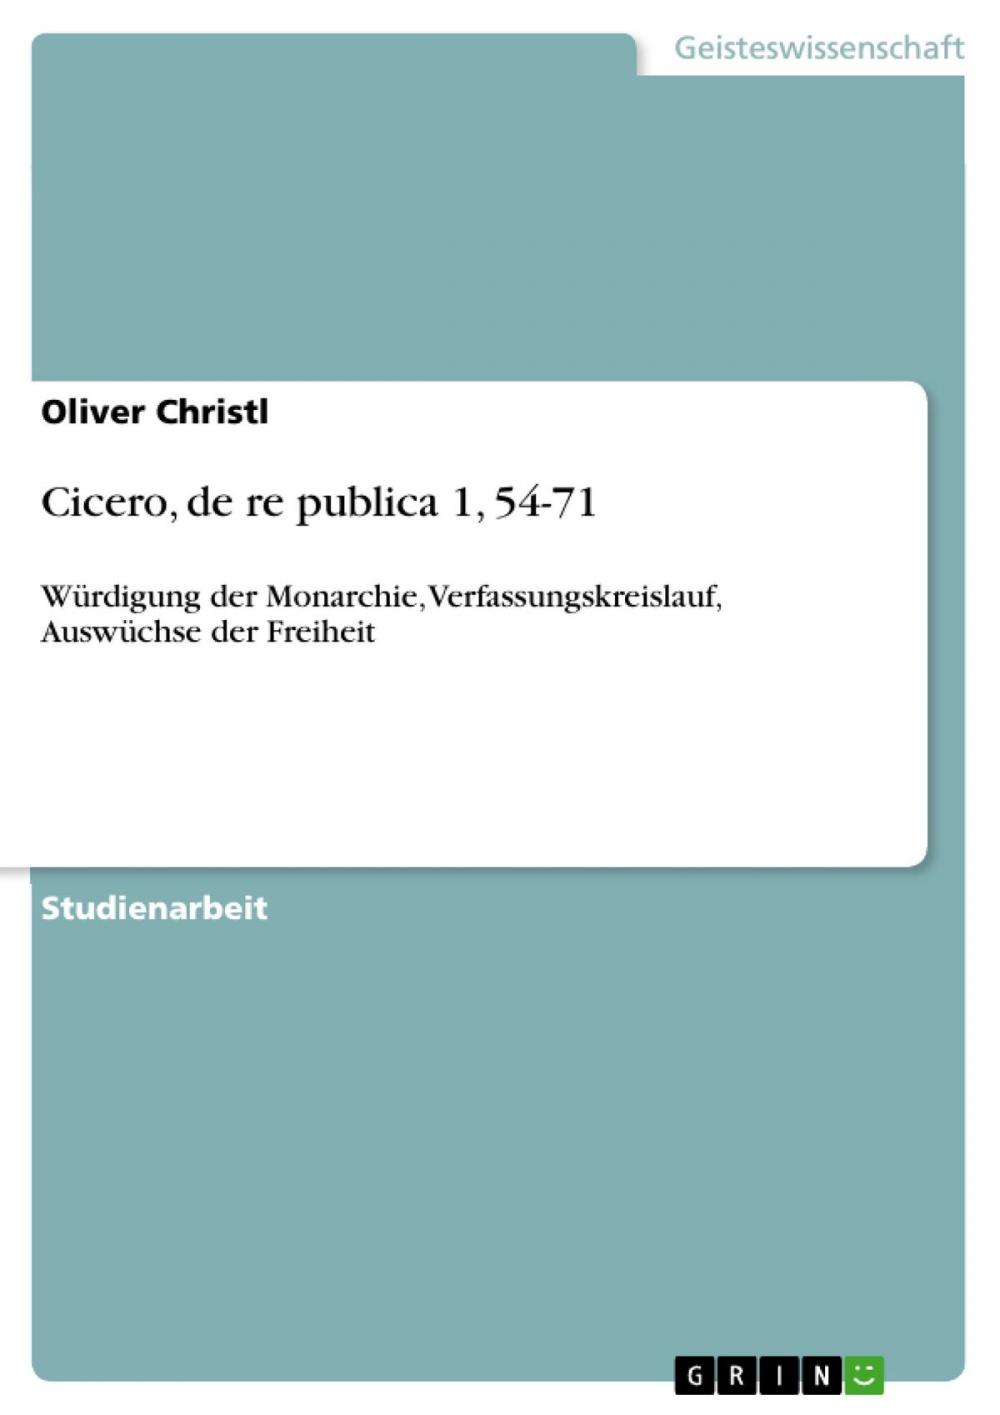 Big bigCover of Cicero, de re publica 1, 54-71